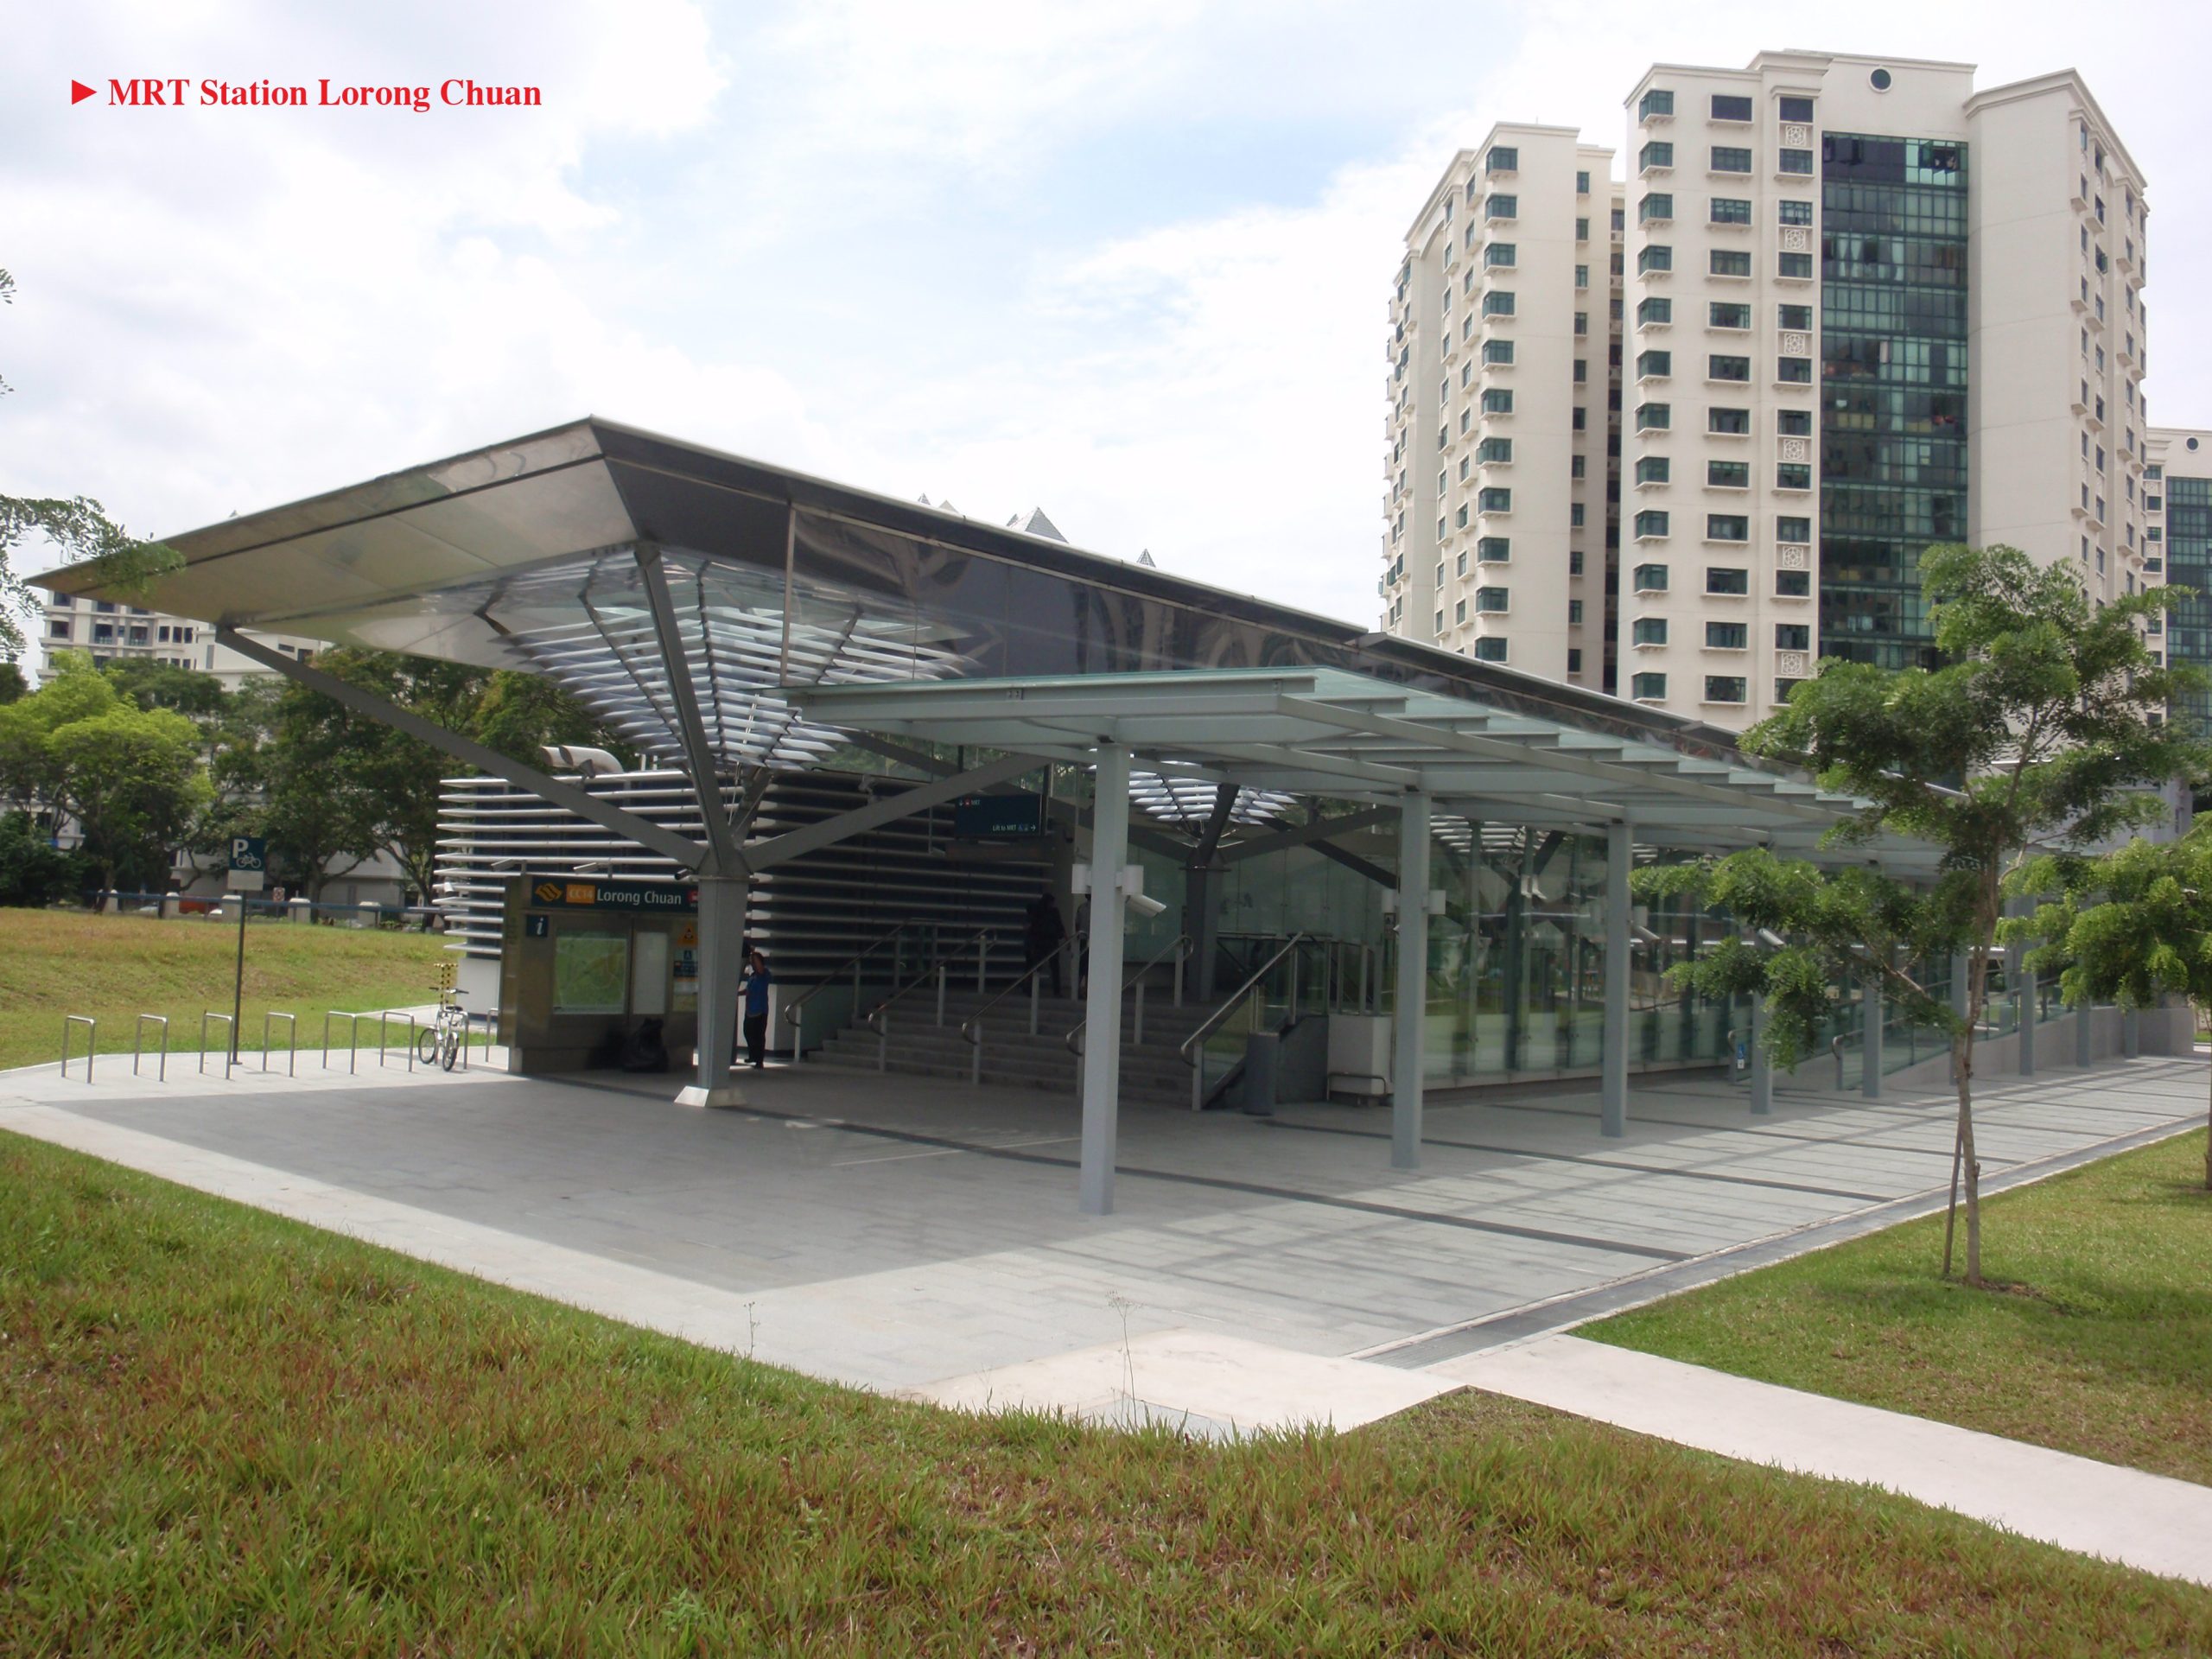 MRT Station Lorong Chuan